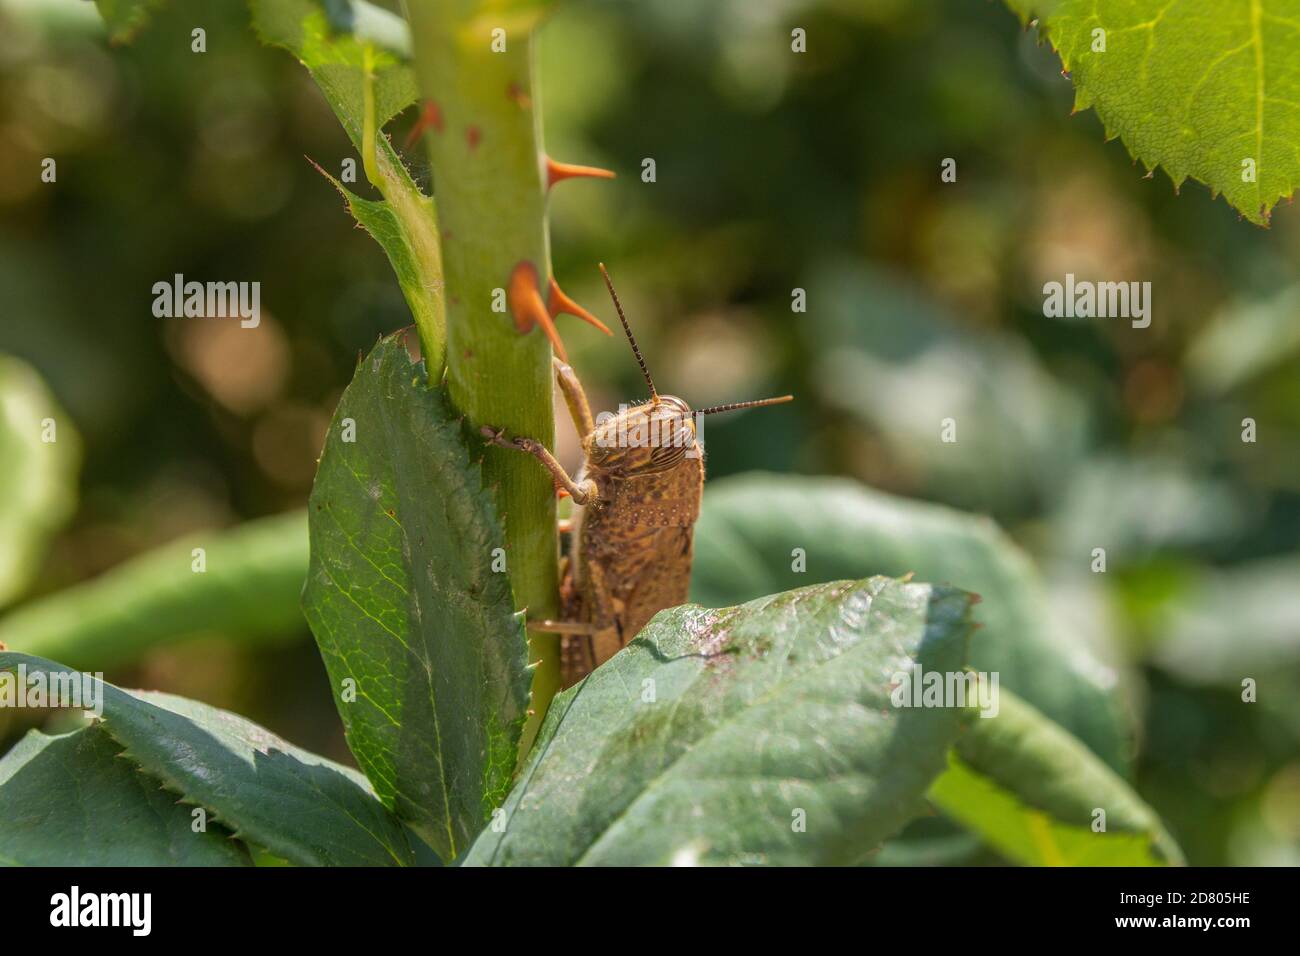 Anacridium aegyptium, Egyptian grasshopper on a Rose Bush Stock Photo